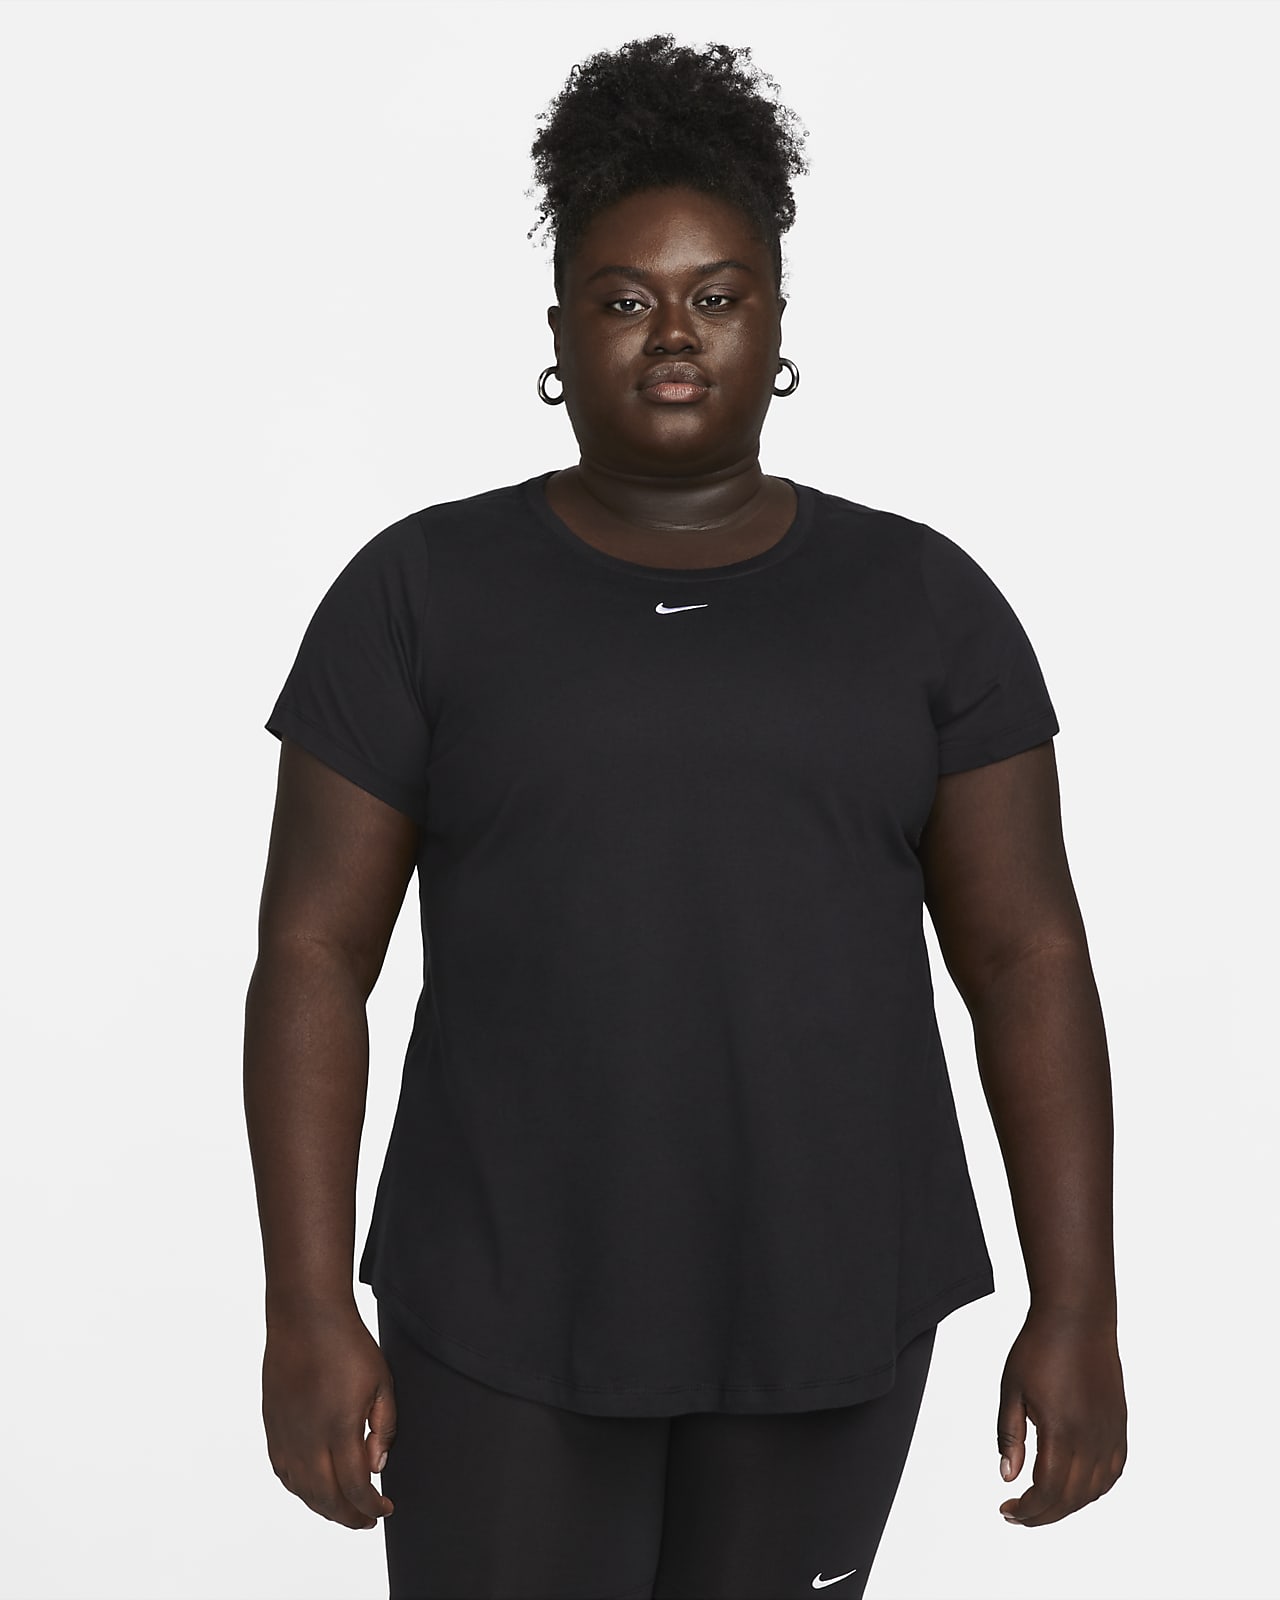 Nike Sportswear Women's Long-Sleeve T-Shirt (Plus Size)